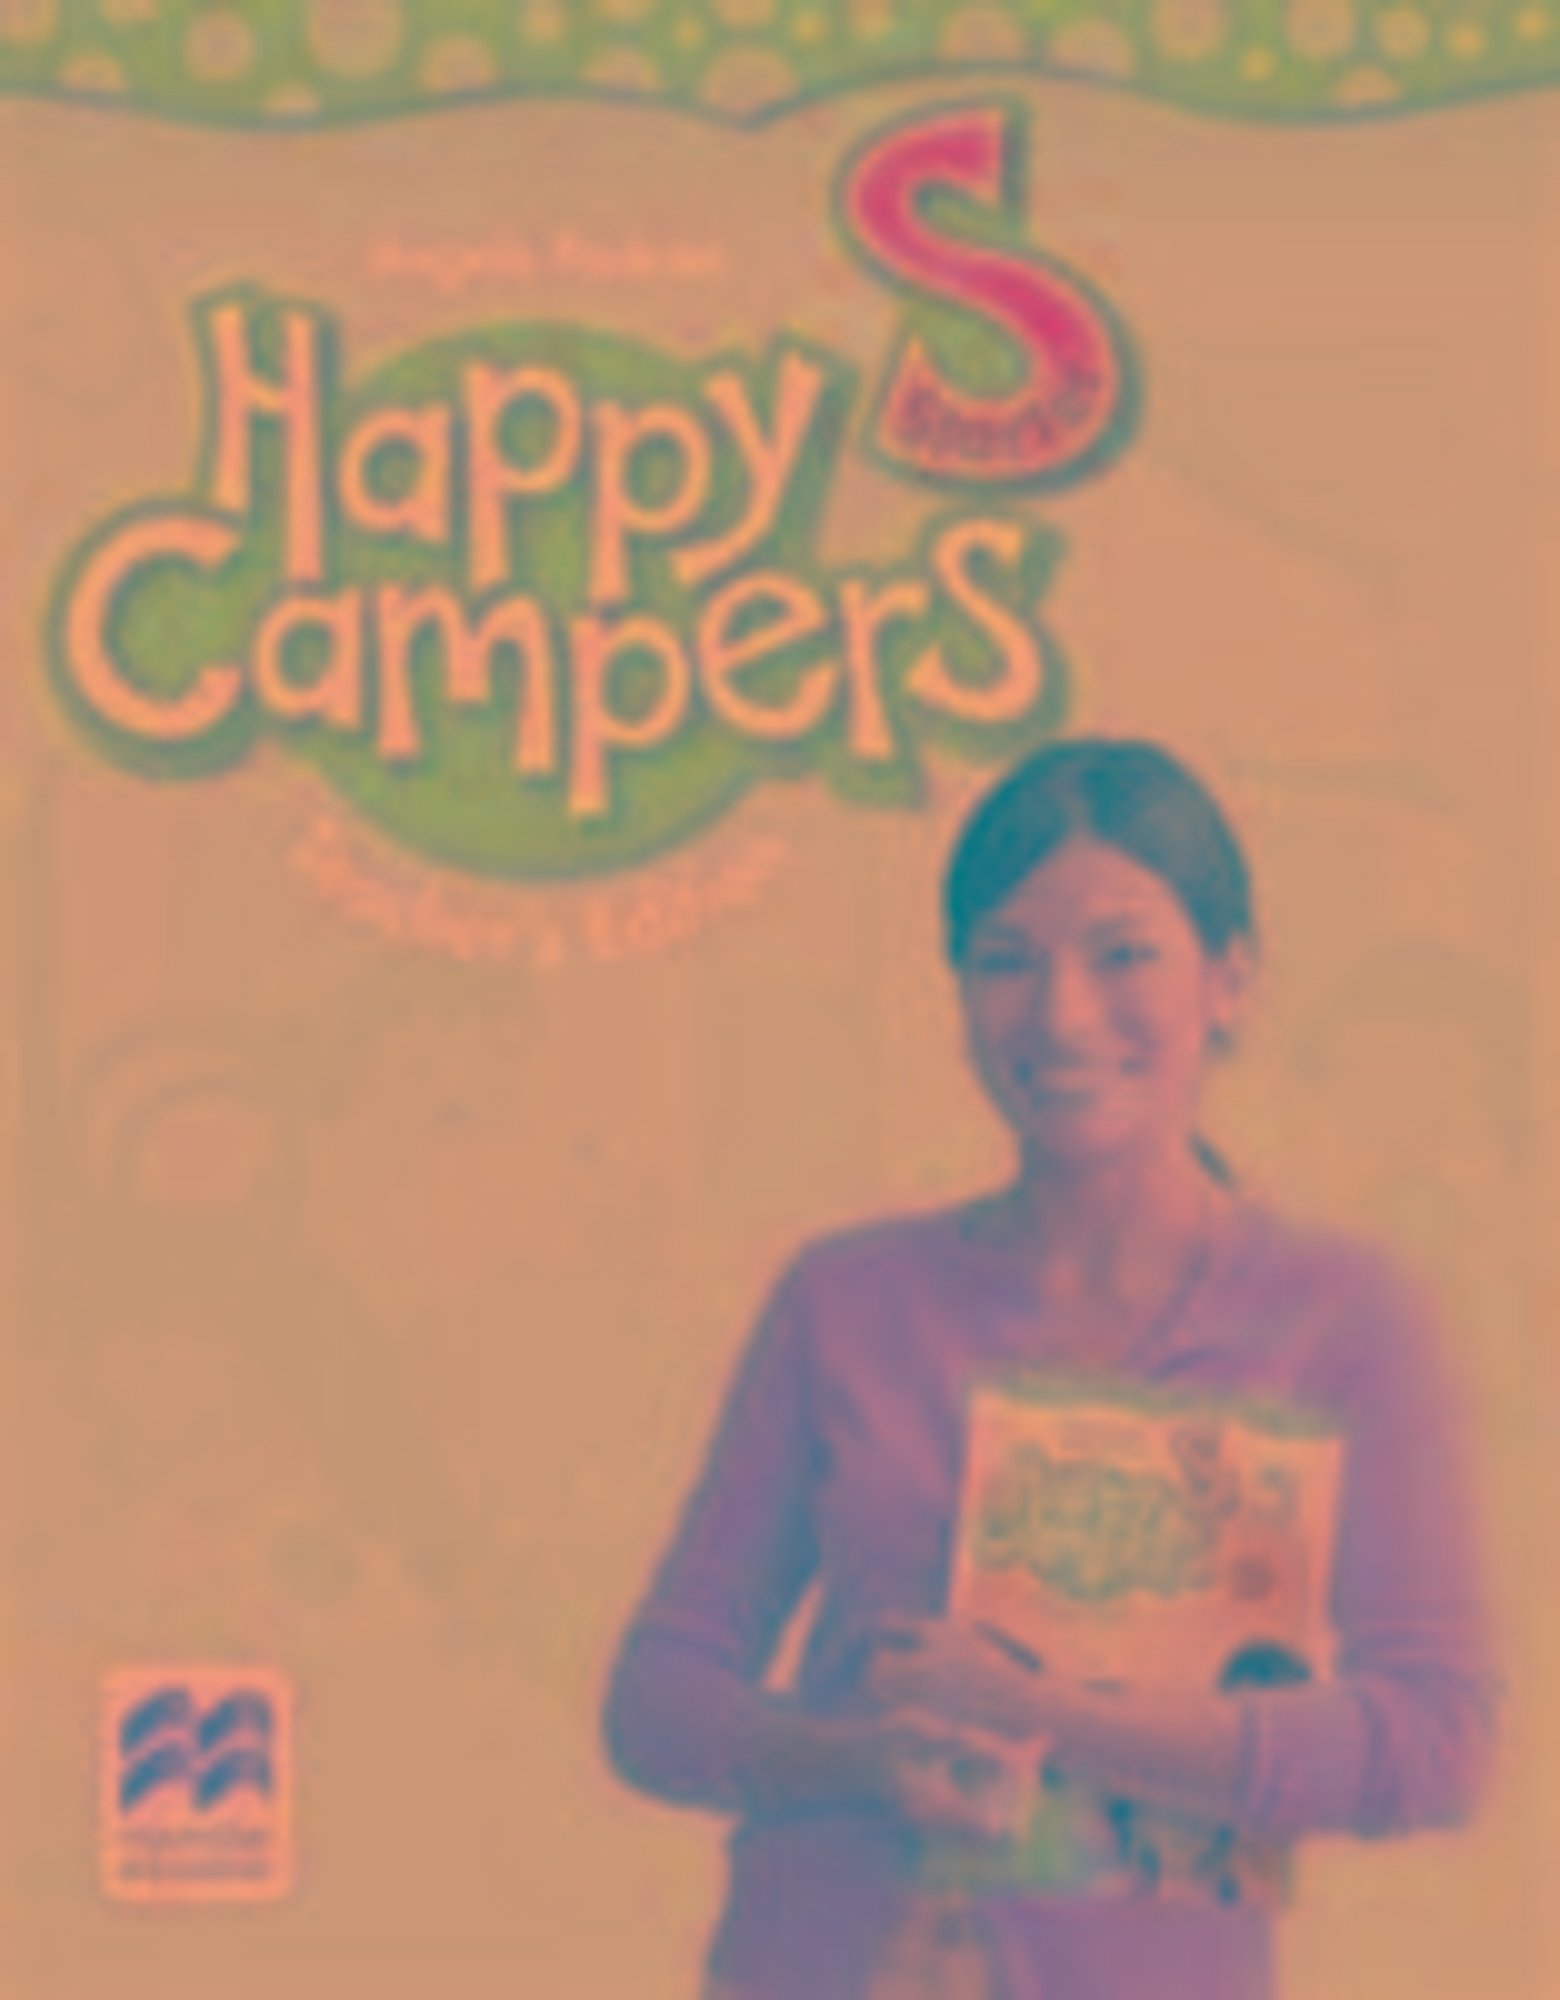 Happy　Schulbuch　Edition　s　Teacher　Level　'Sprachkurse'　Campers　'978-0-230-47328-7'　Starter　Pack'